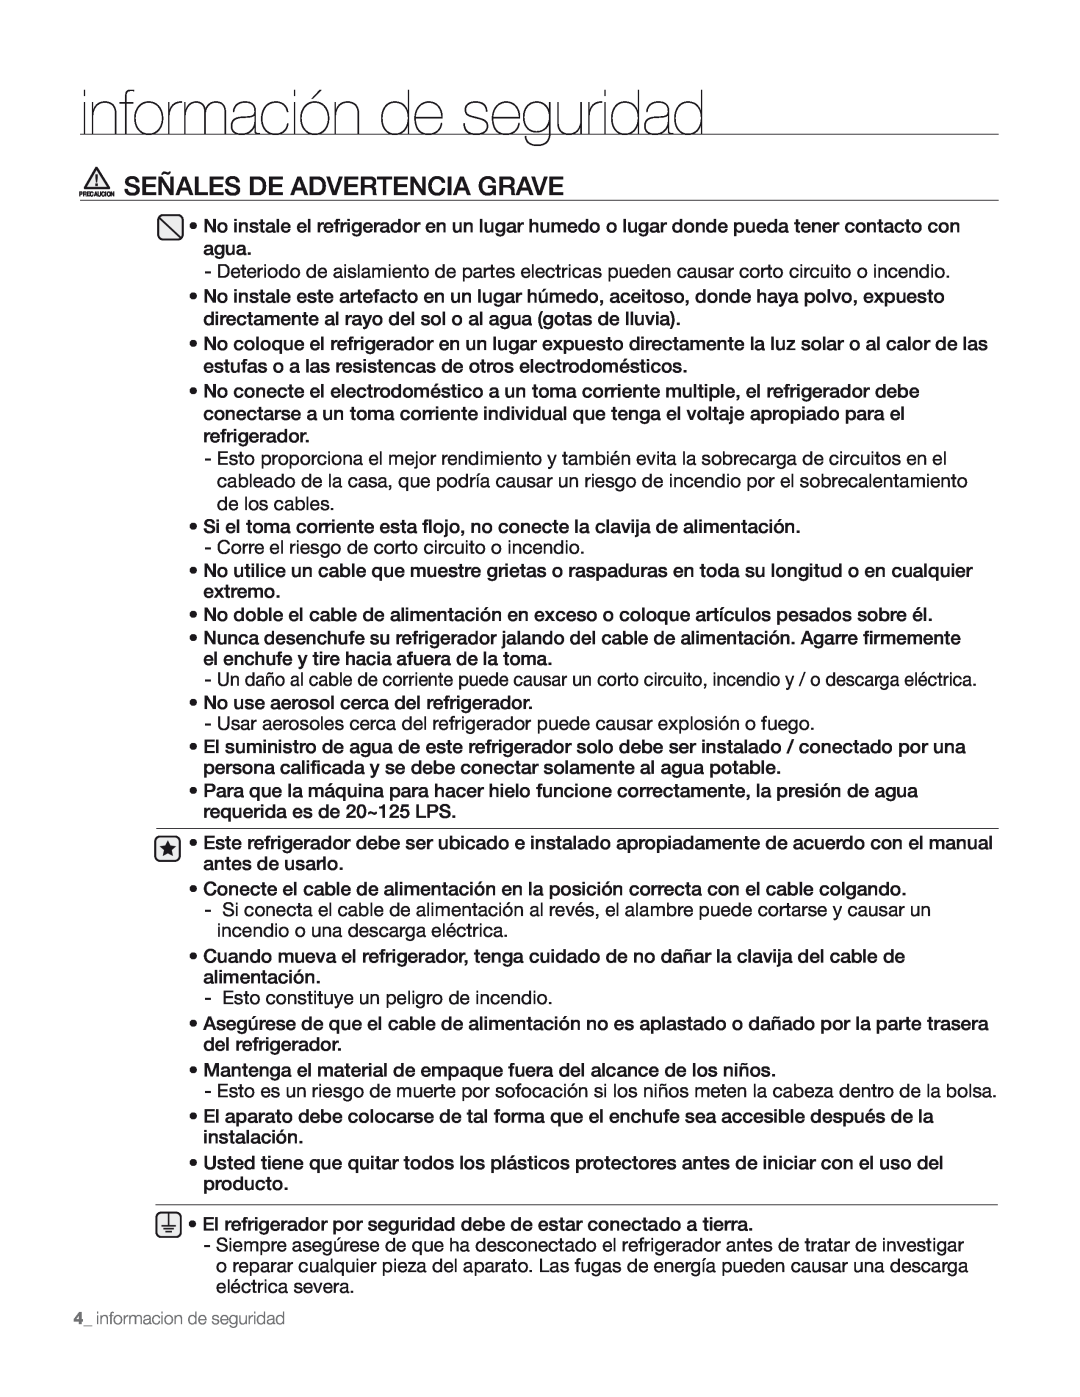 Samsung DA68-01890M user manual Precaucion Señales De Advertencia Grave, información de seguridad 